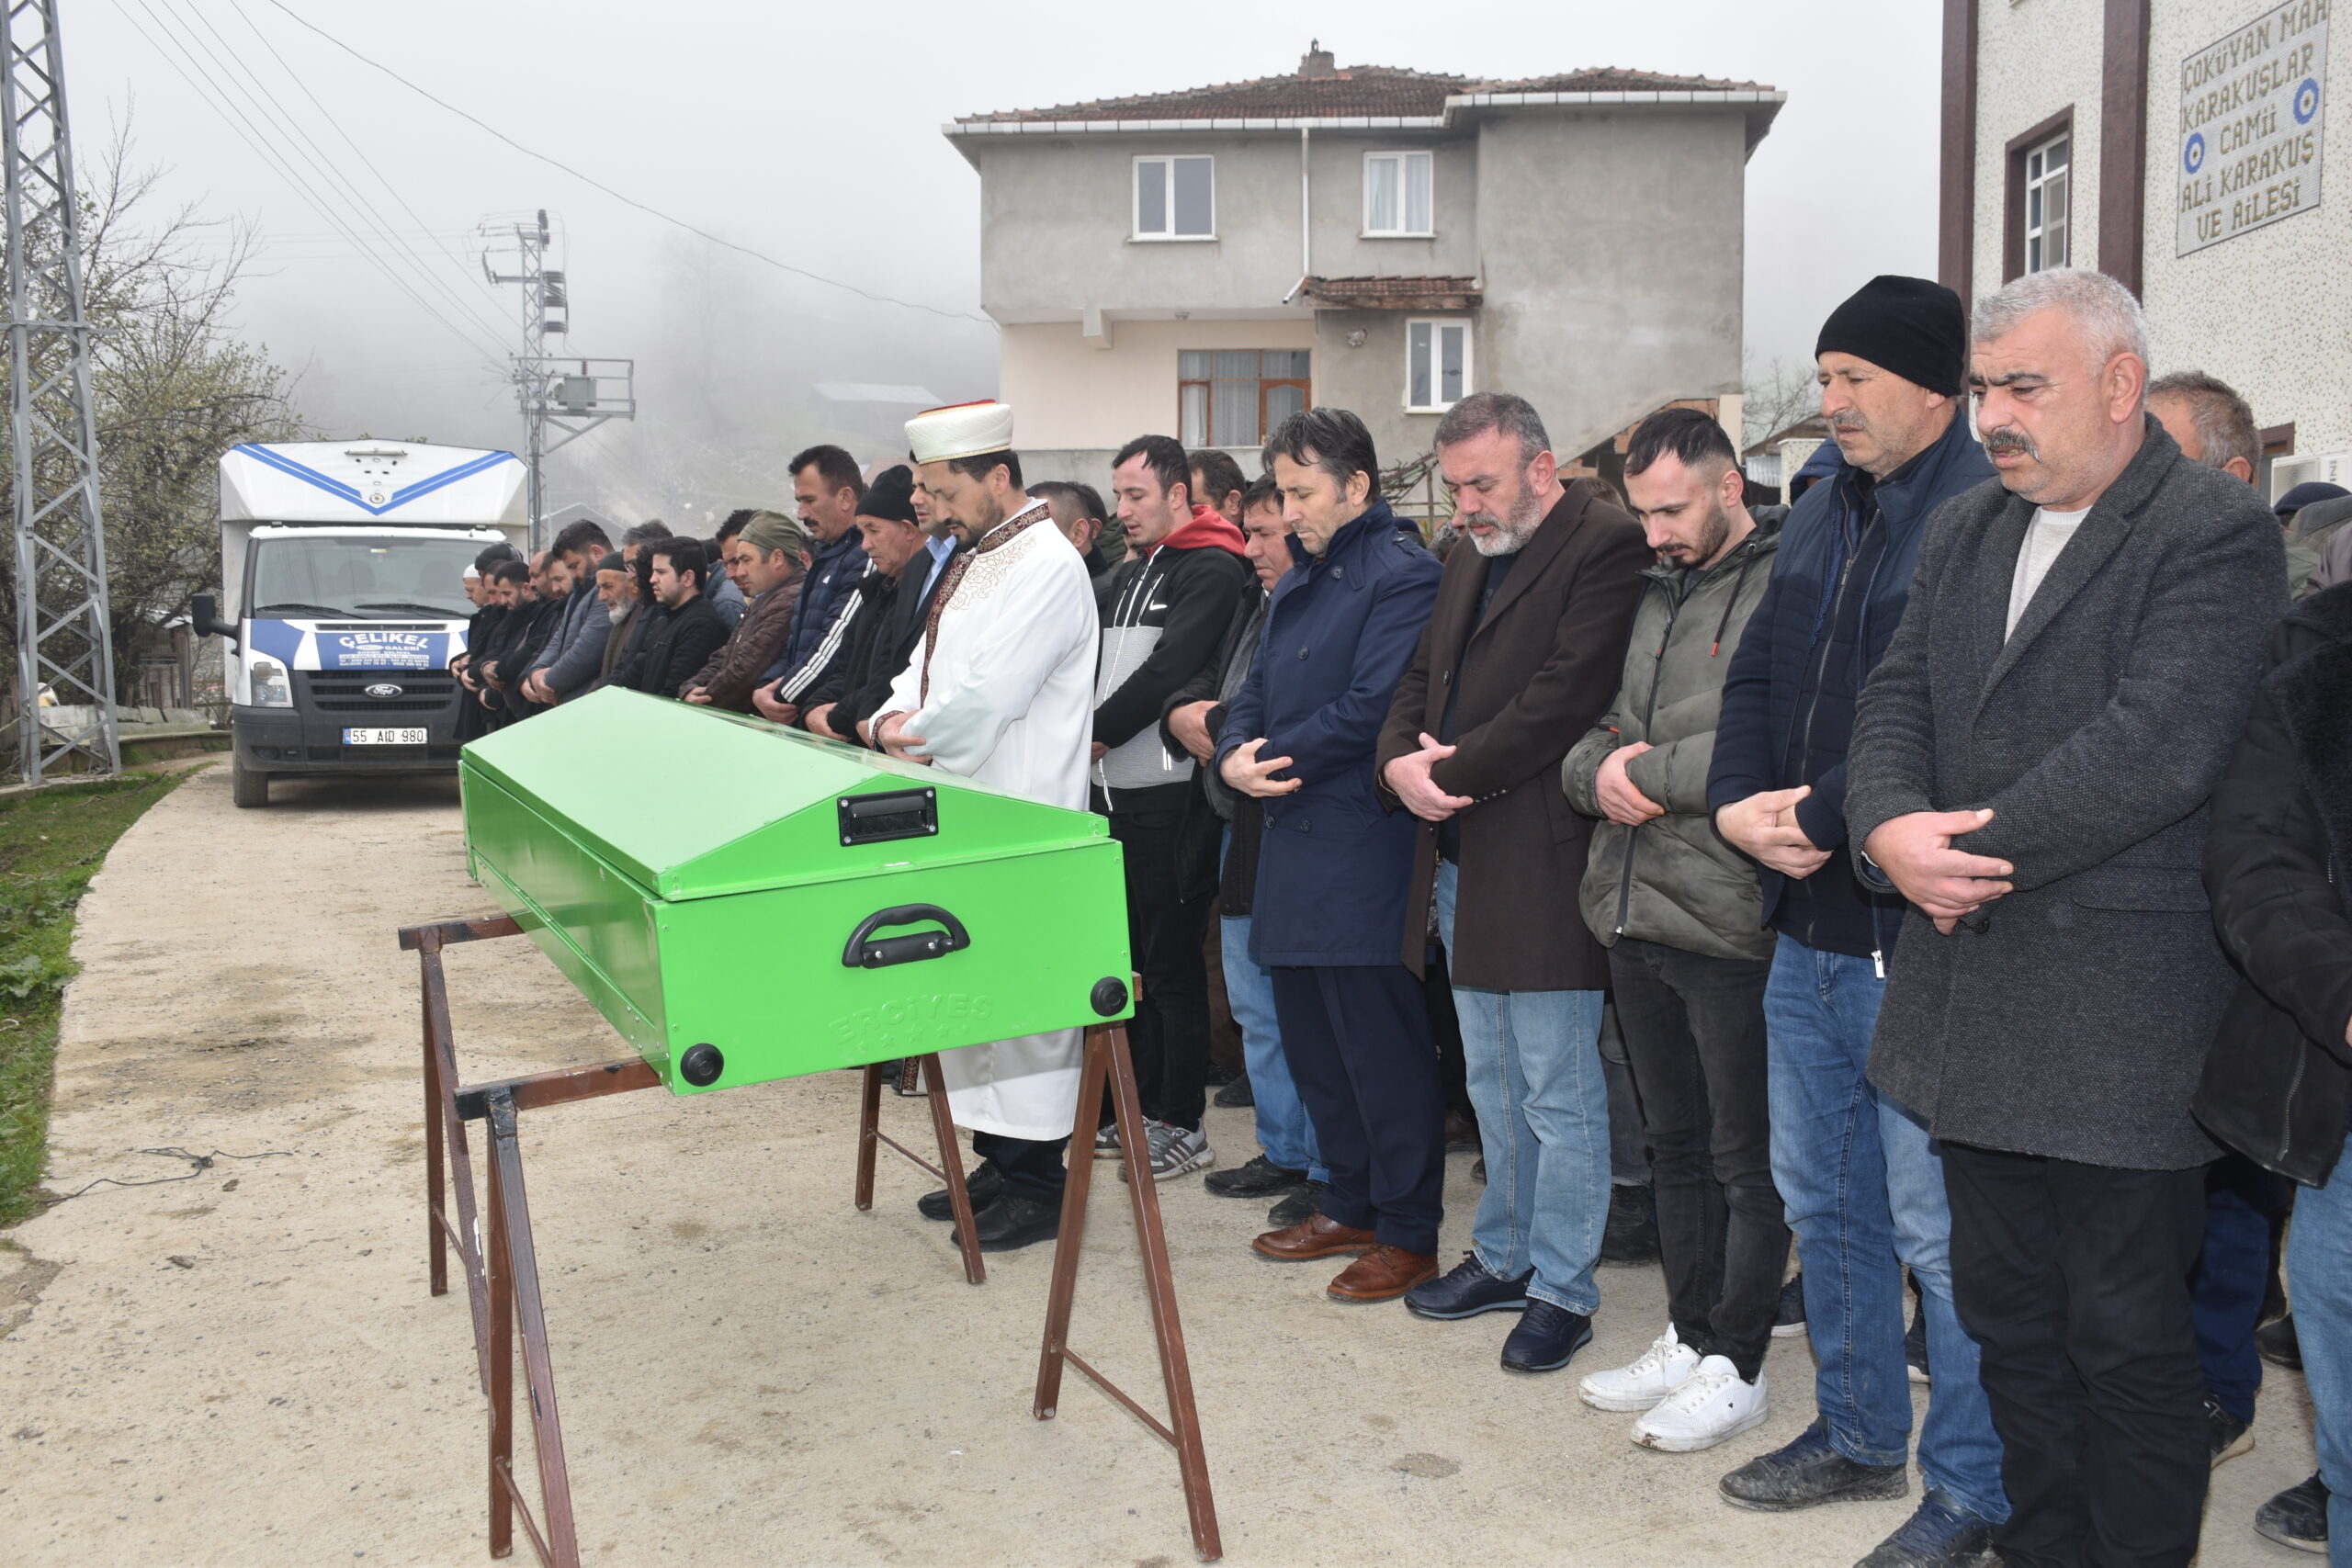 Belediye Başkanımız Hüseyin Kıyma, Karaaba Çökeyan mahallemizde meydana gelen kaza sonucu vefat eden Erol Albayrak’ın cenaze namazına katıldı, ailesine baş sağlığında bulundu.